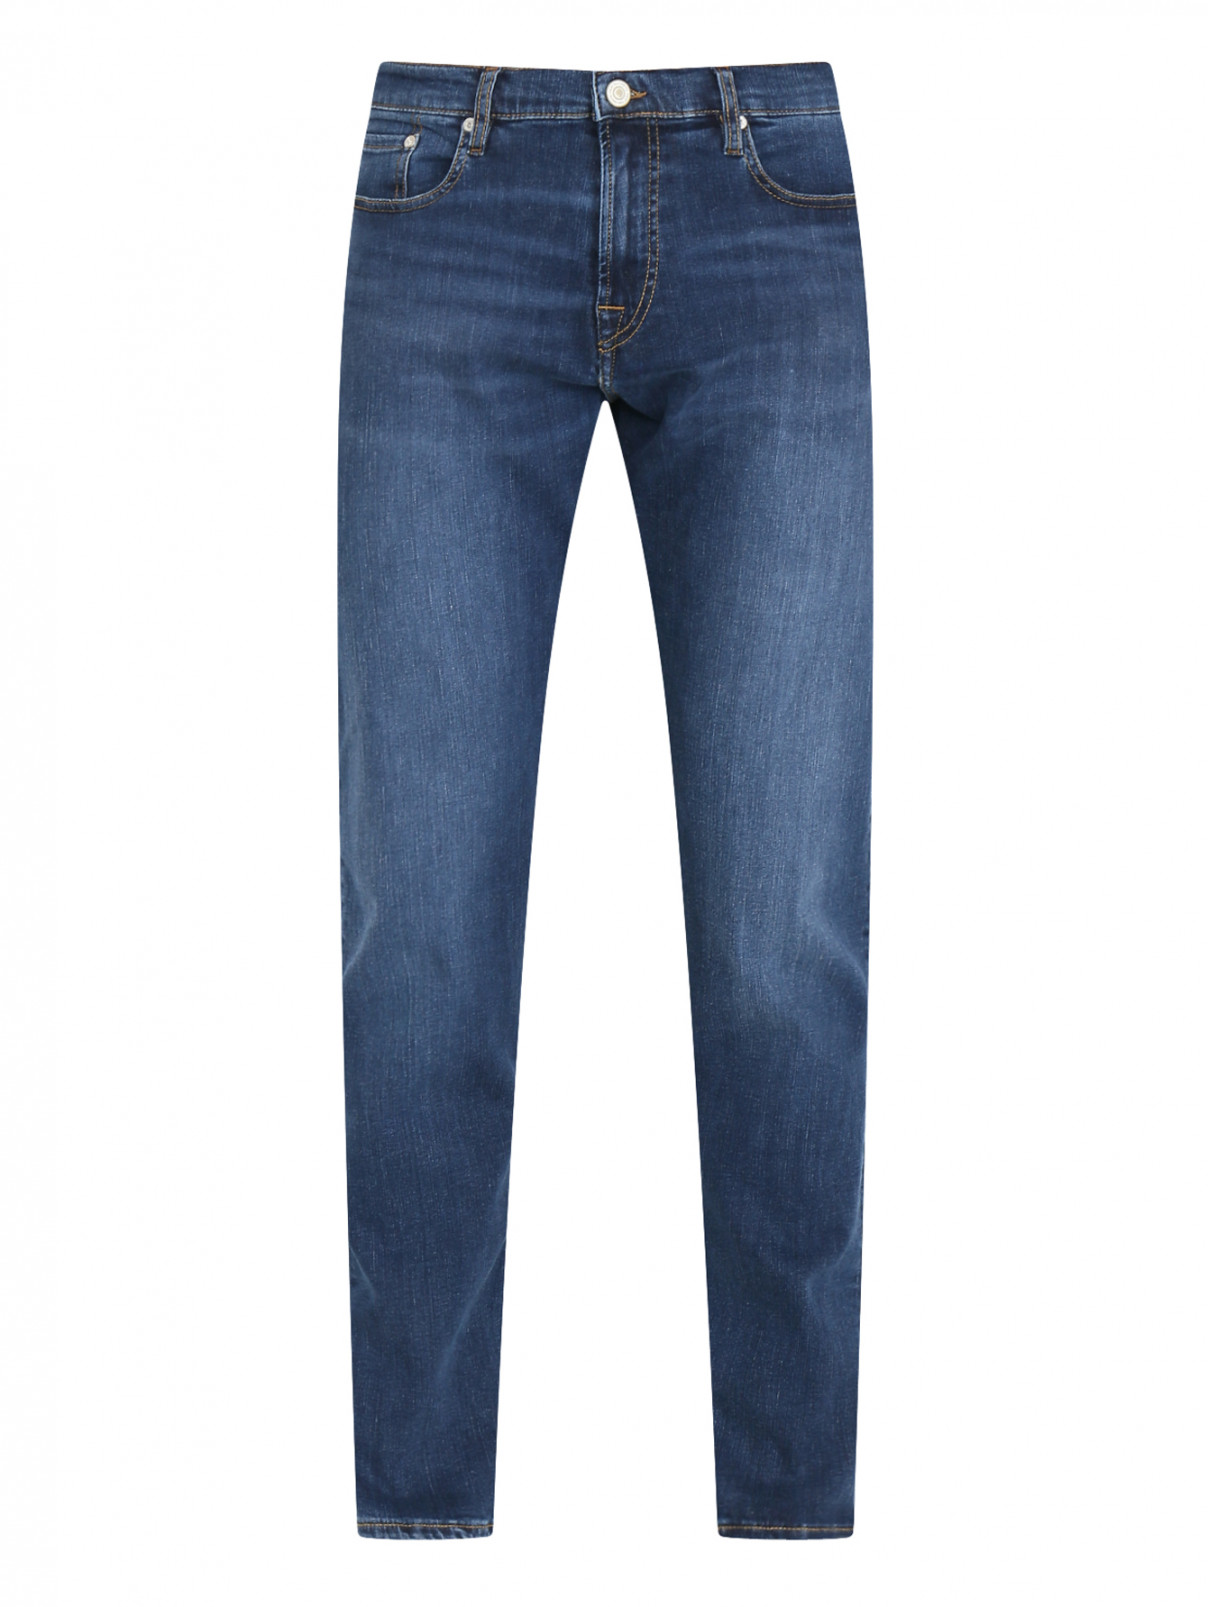 Зауженные джинсы из хлопка Paul Smith  –  Общий вид  – Цвет:  Синий